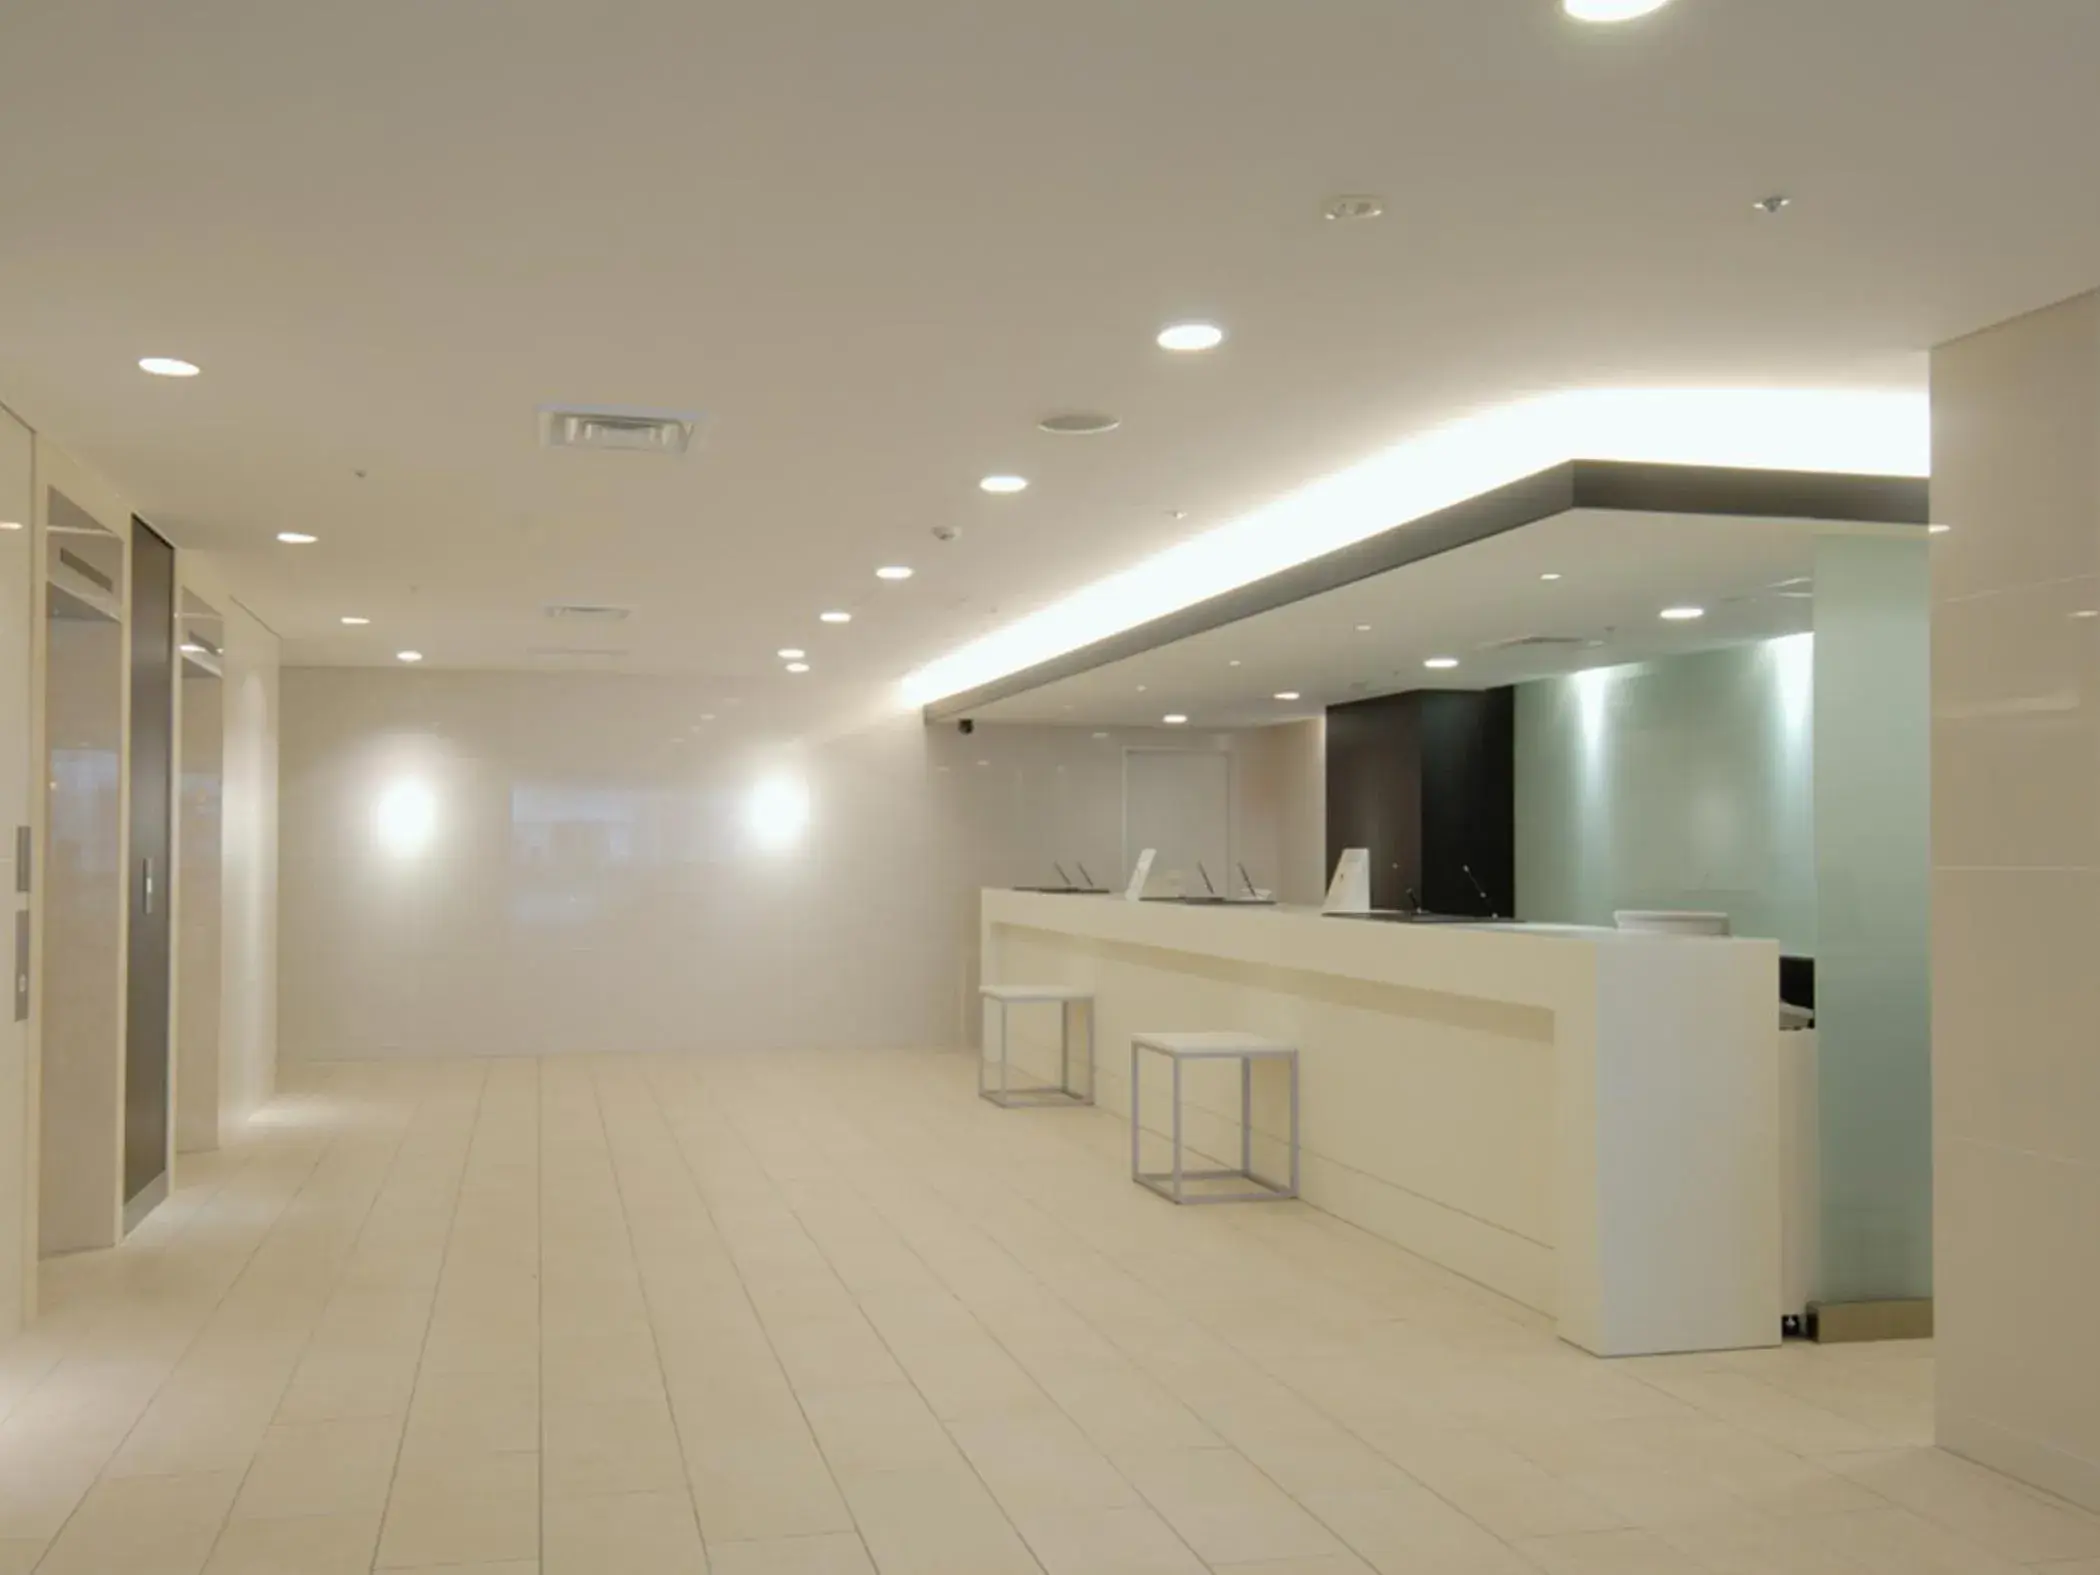 Lobby or reception, Lobby/Reception in Meitetsu Inn Nagoya Nishiki